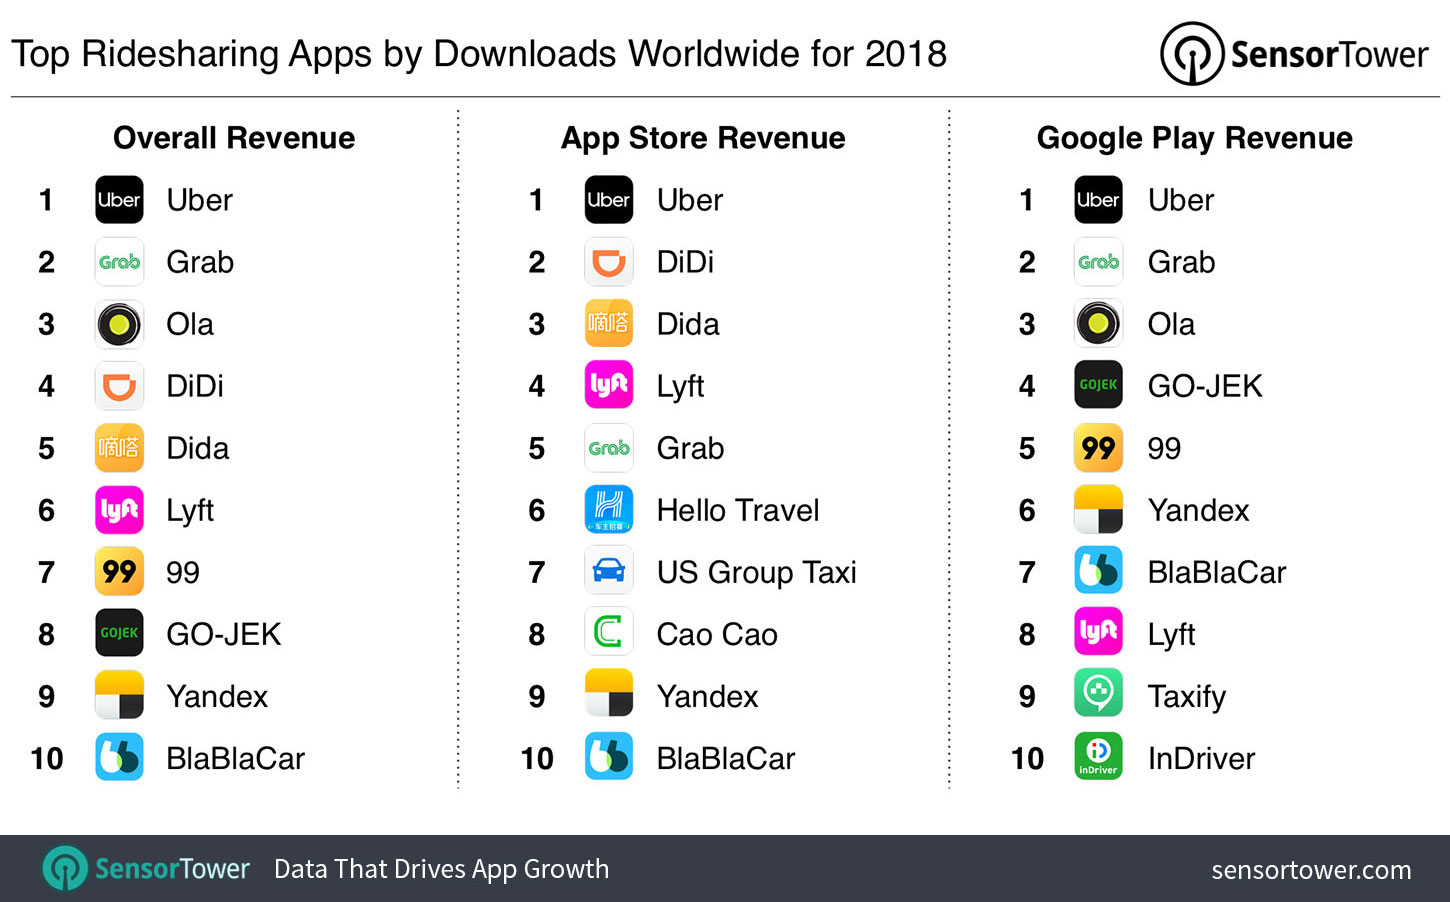 Uber fue la app de ridesharing más descargada en 2018